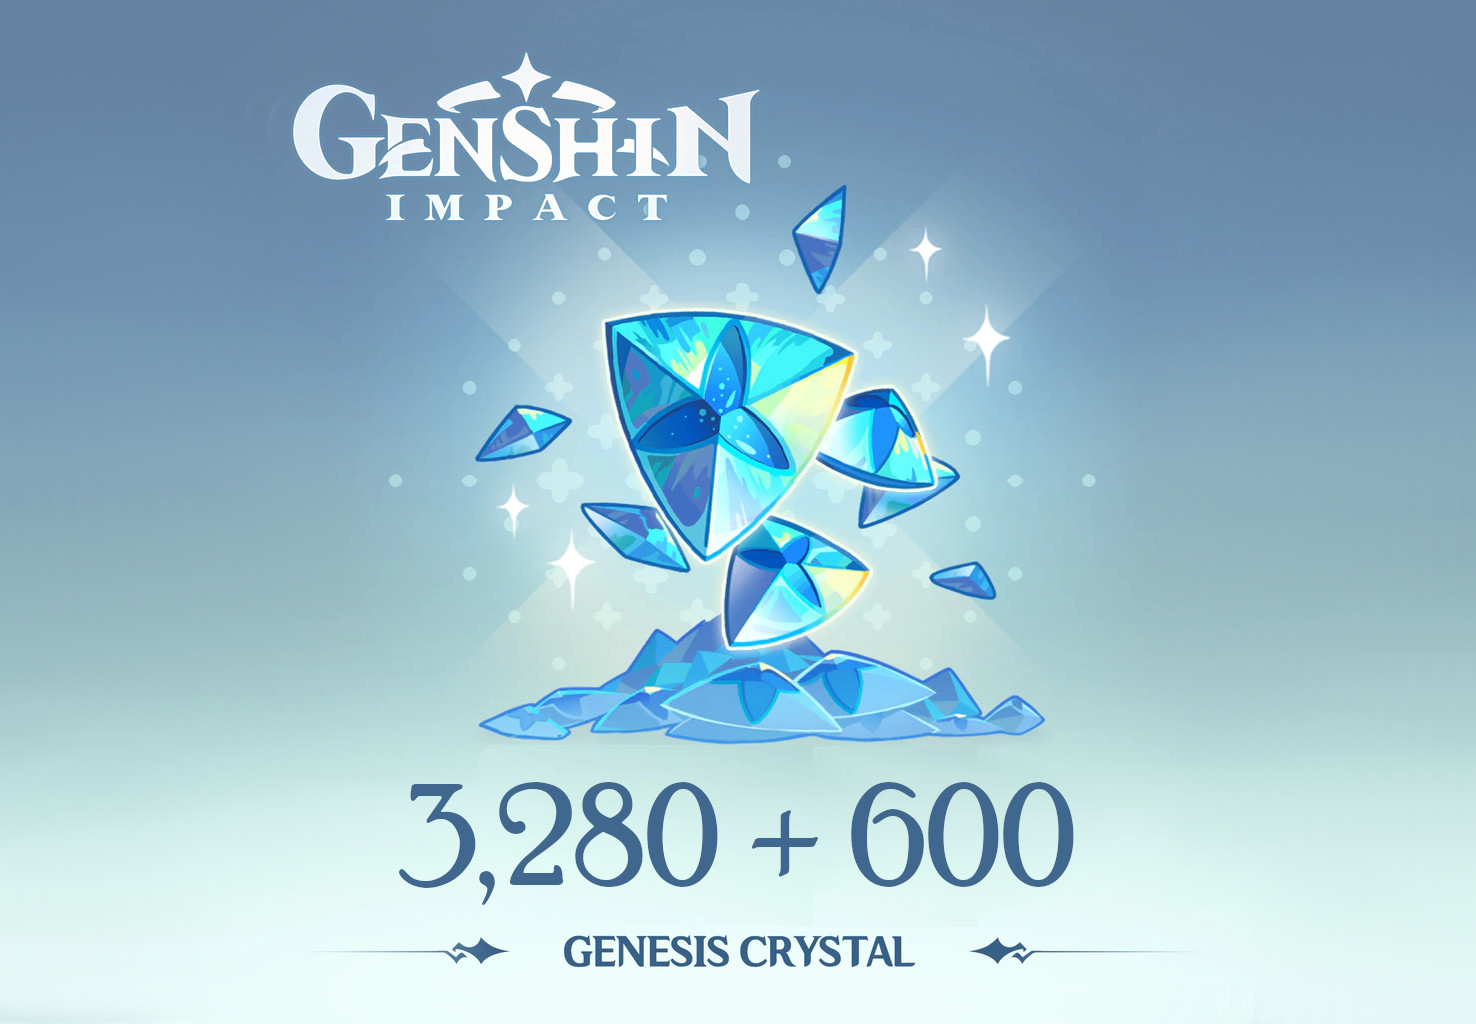 Genshin Impact - 3,280 + 600 Genesis Crystals Reidos Voucher (53.39$)